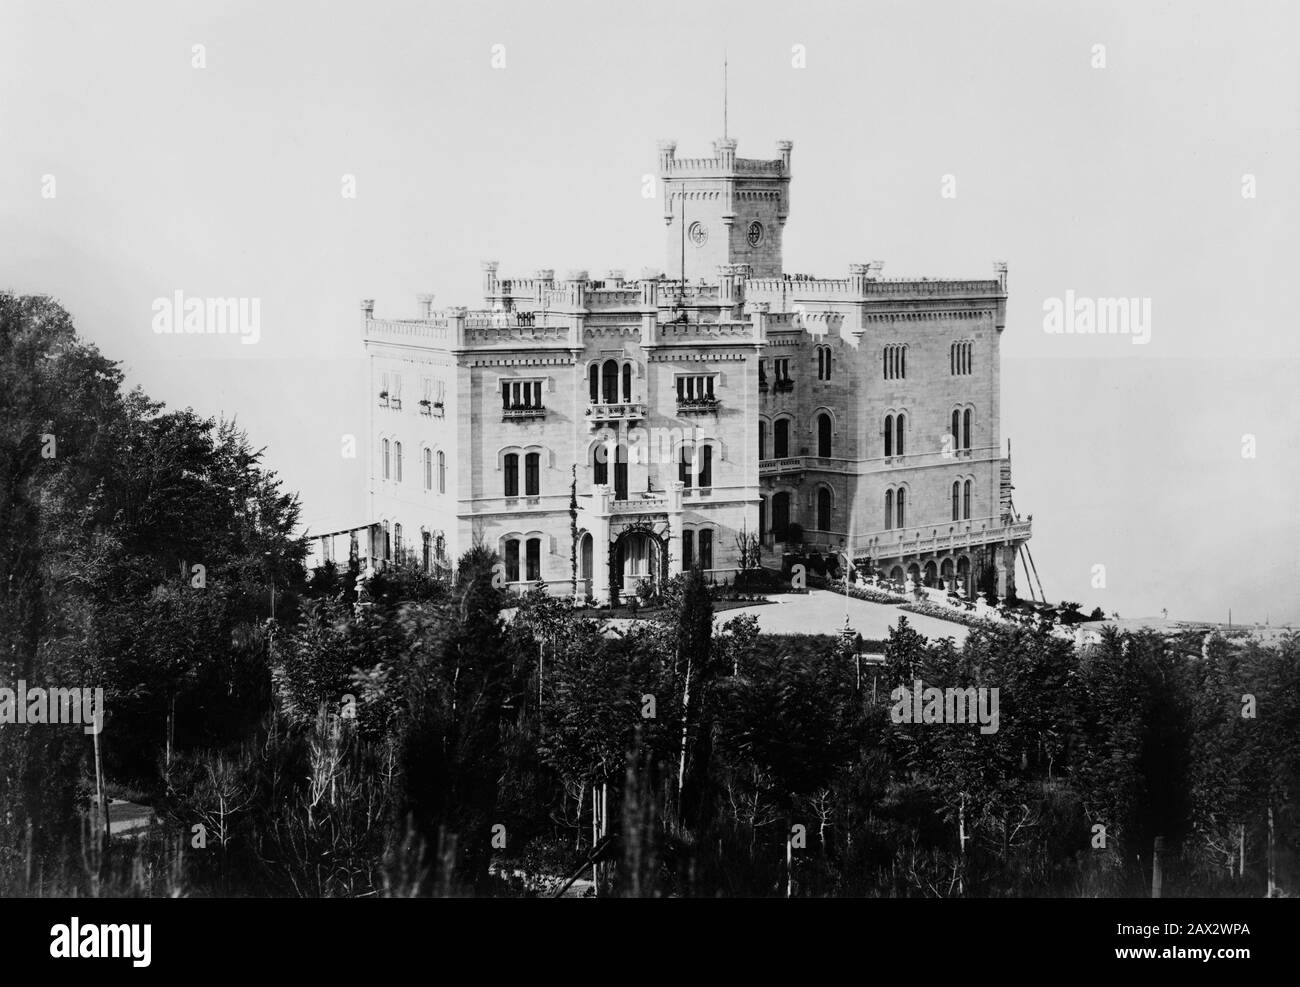 1890 ca, TRIESTE, ITALIA : IL CASTELLO DI MIRAMARE, maniero degli imperatori del Messico MASSIMILIANO e CARLOTTA di ABSBURG ( Massimiliano d' Asburgo - Absburgo ). Foto di fotografo non drogato . - ITALIA - GEOGRAFIA - CHARLOTTE - GEOGRAFIA - FOTO STORICHE - STORIA - CASTELLO - MIRAMAR - MARE - MARE - ARCHITETTURA - ARCHITETTURA - VON ASBURG - CASTELLO - MARE - MARE - OTTOCENTO - XIX SECOLO - 800 - - - - - -- - Archivio GBB Foto Stock